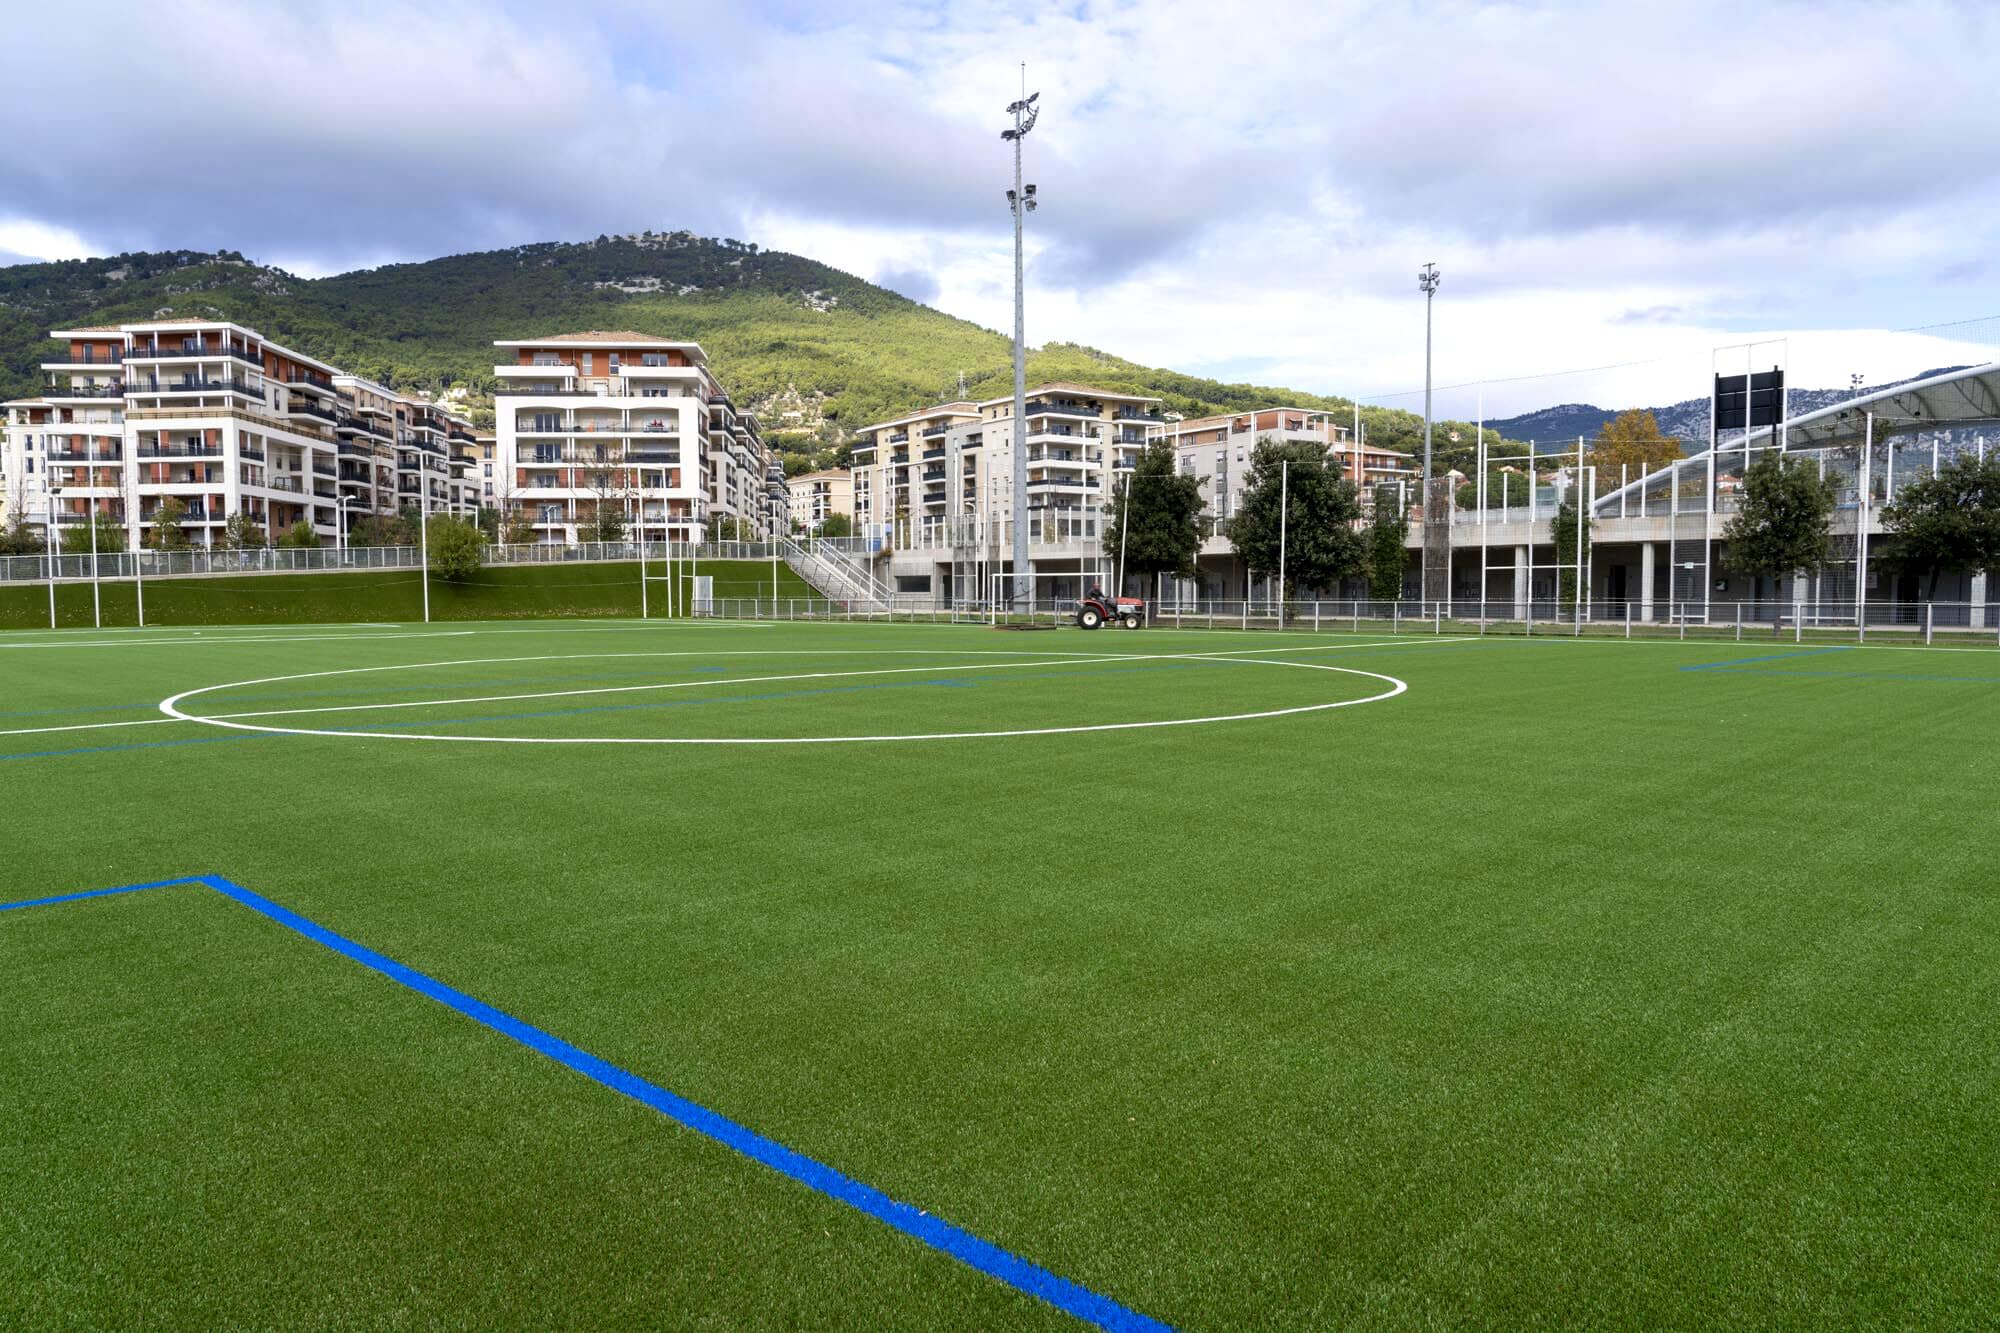 noyaux d'olives, Un nouveau terrain de foot avec une pelouse en noyaux d&#8217;olives inauguré à Toulon, Made in Marseille